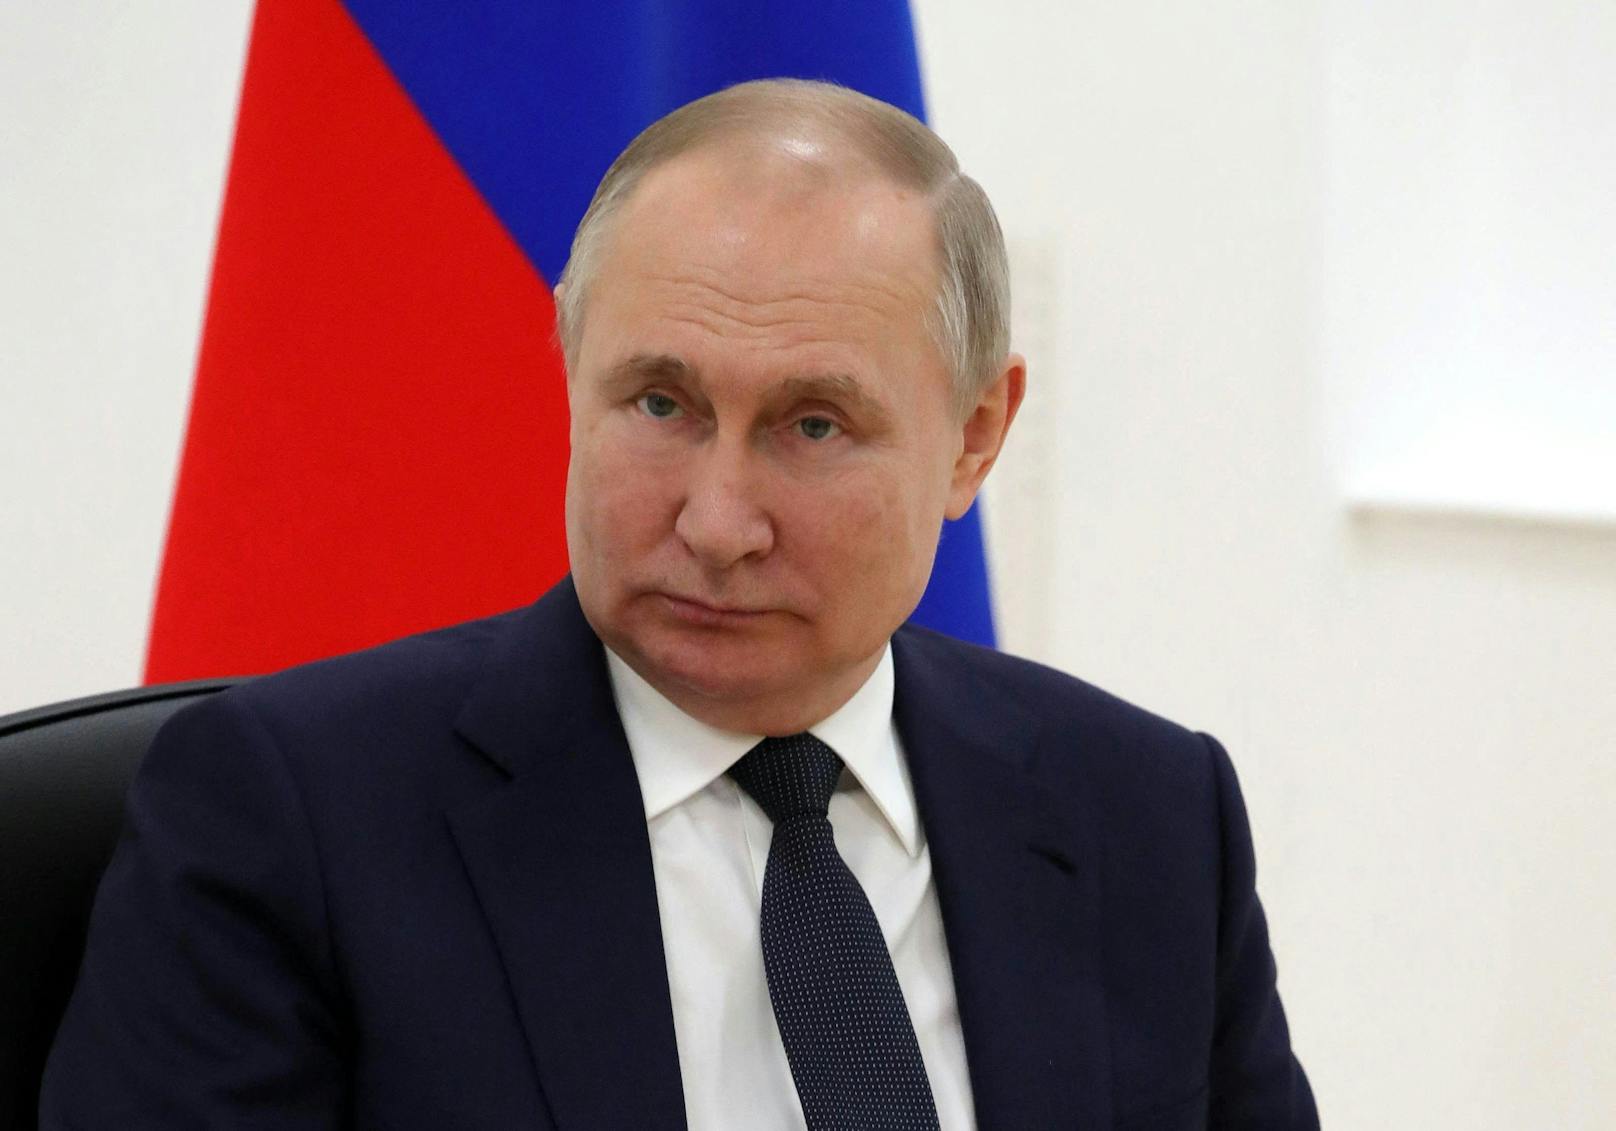 Kreml-Chef Wladimir Putin kann seine Militärbasen nicht vor Googles Satelliten verstecken.